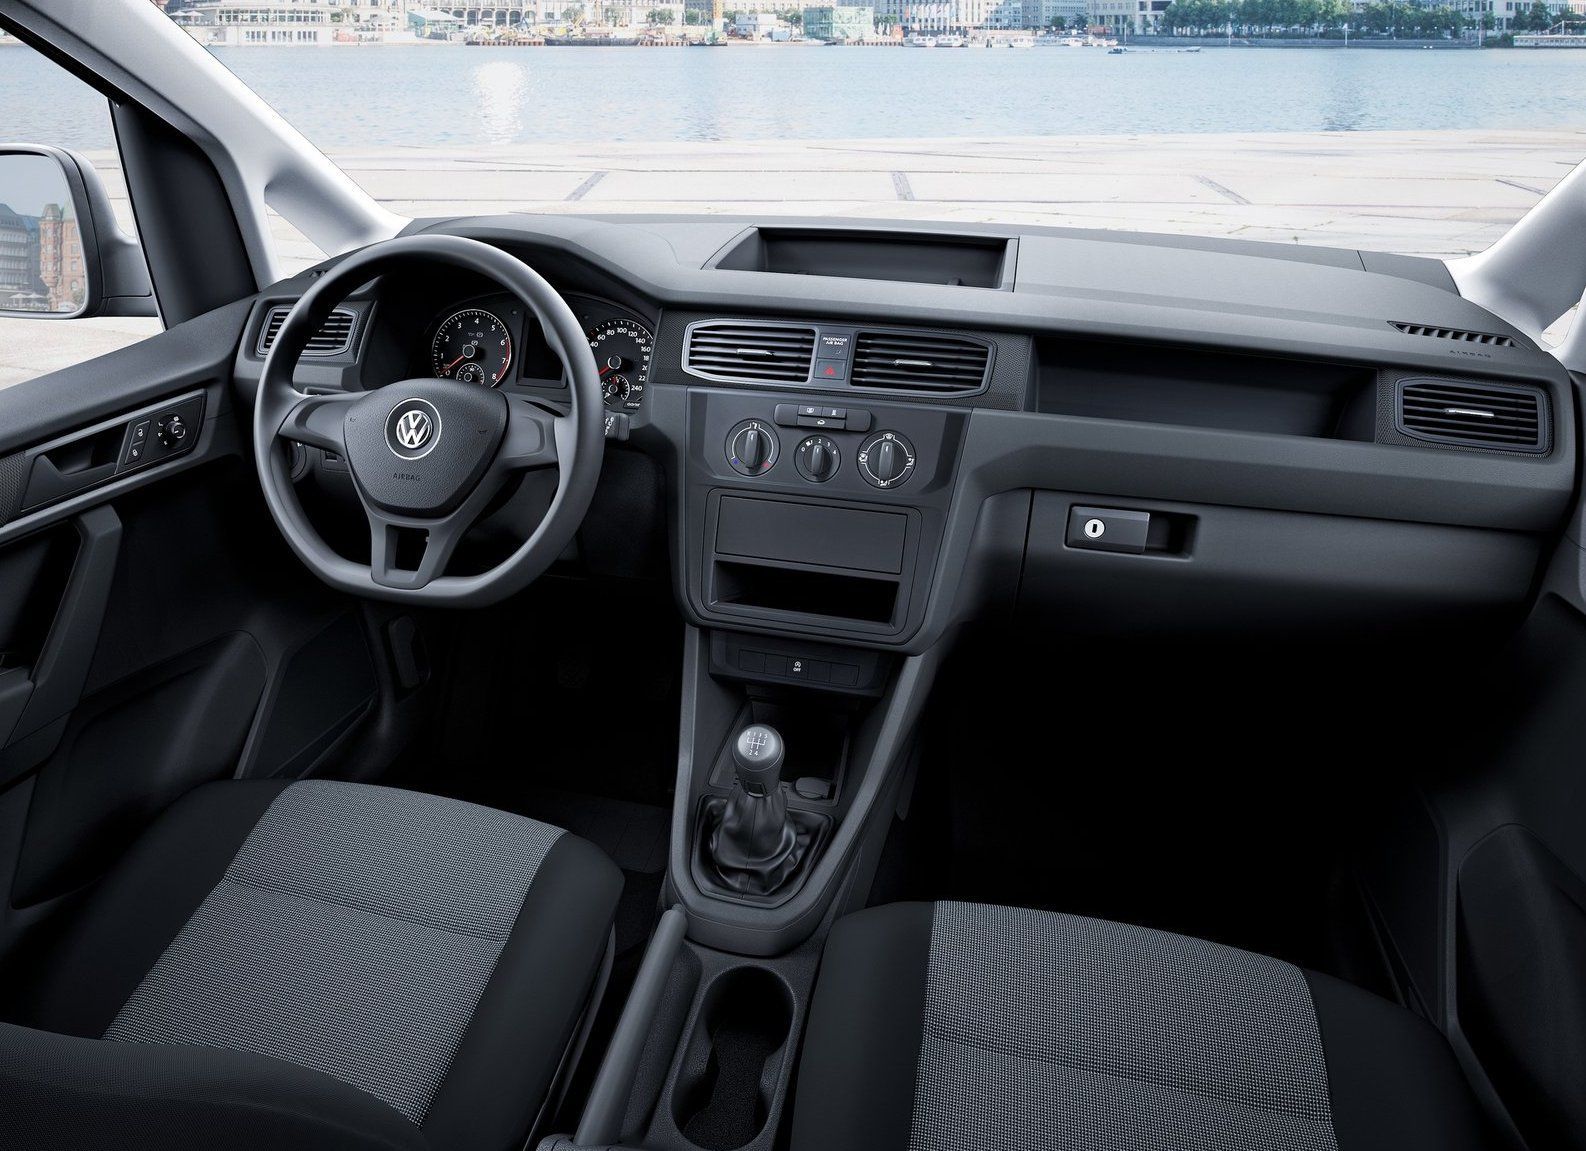 VW Caddy interiér - základní